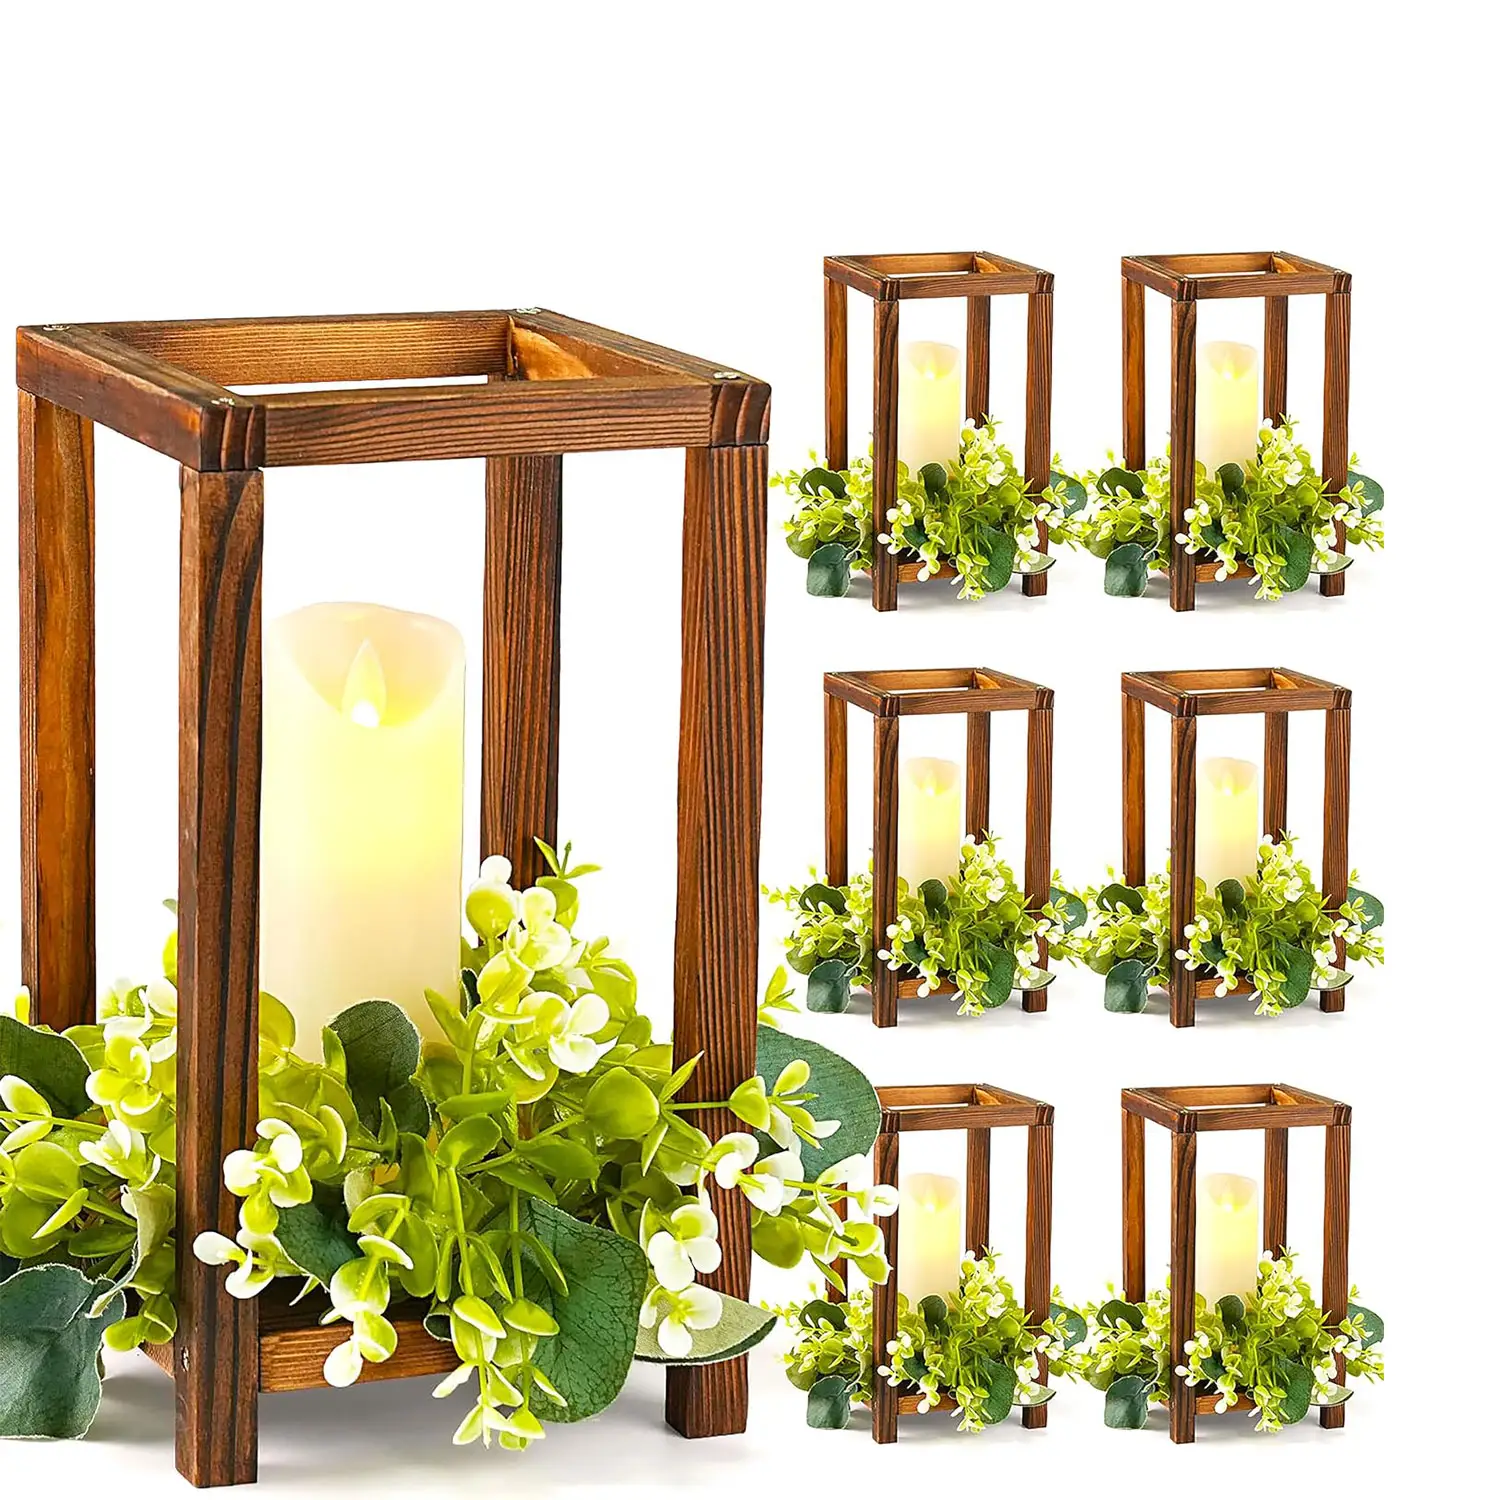 In legno lanterna di nozze centrotavola, lanterna portacandele per la decorazione rustica della tavola di nozze, legno candela lanterna per natale